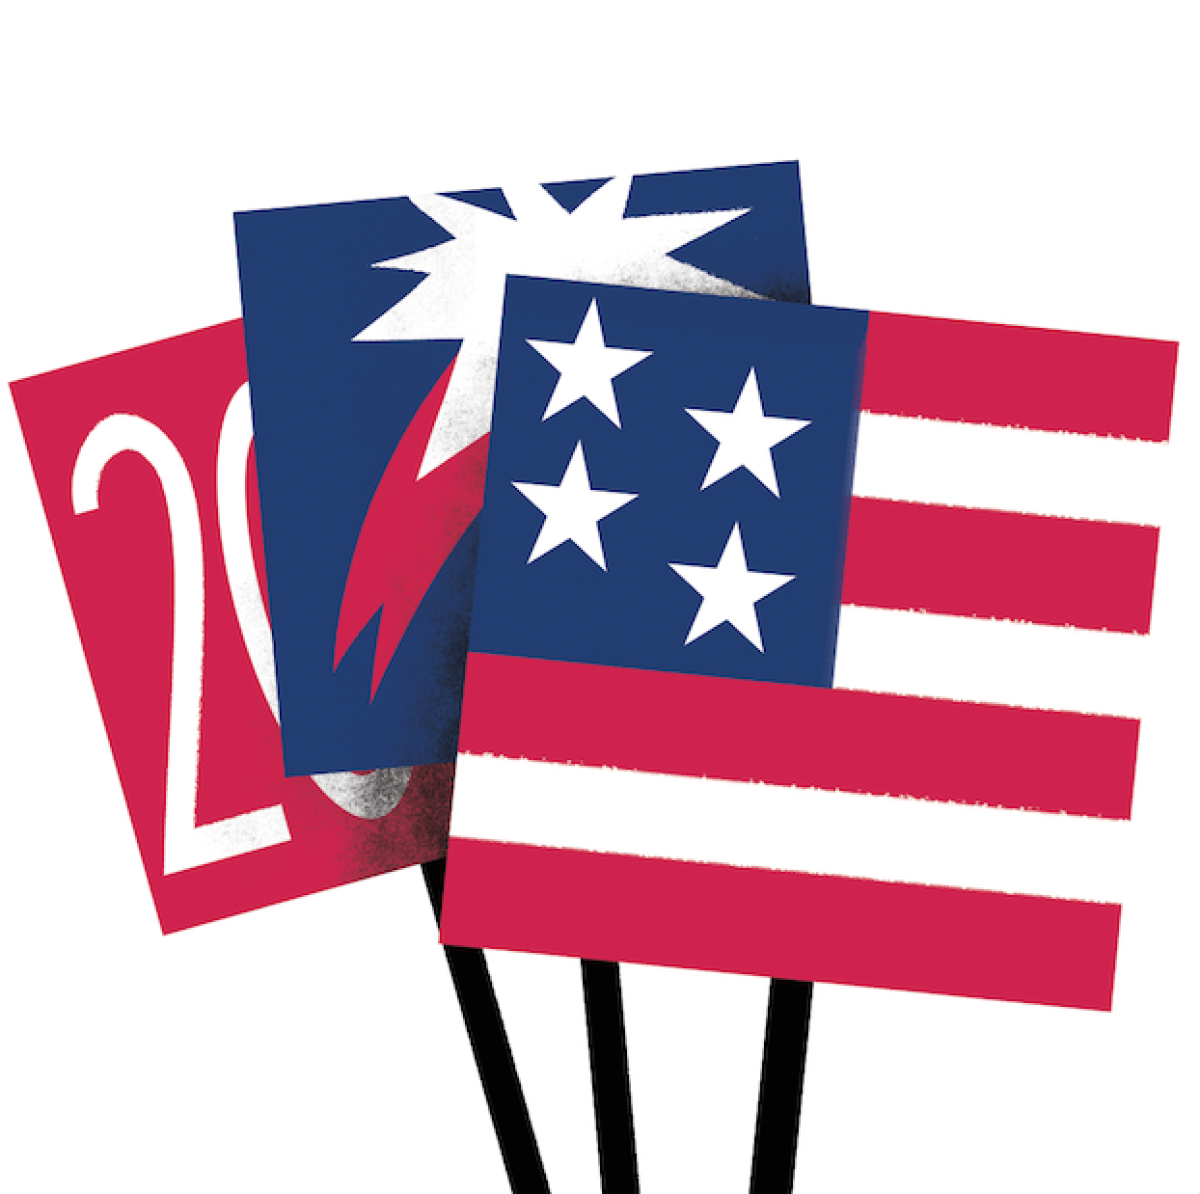 Illustration of U.S. flags